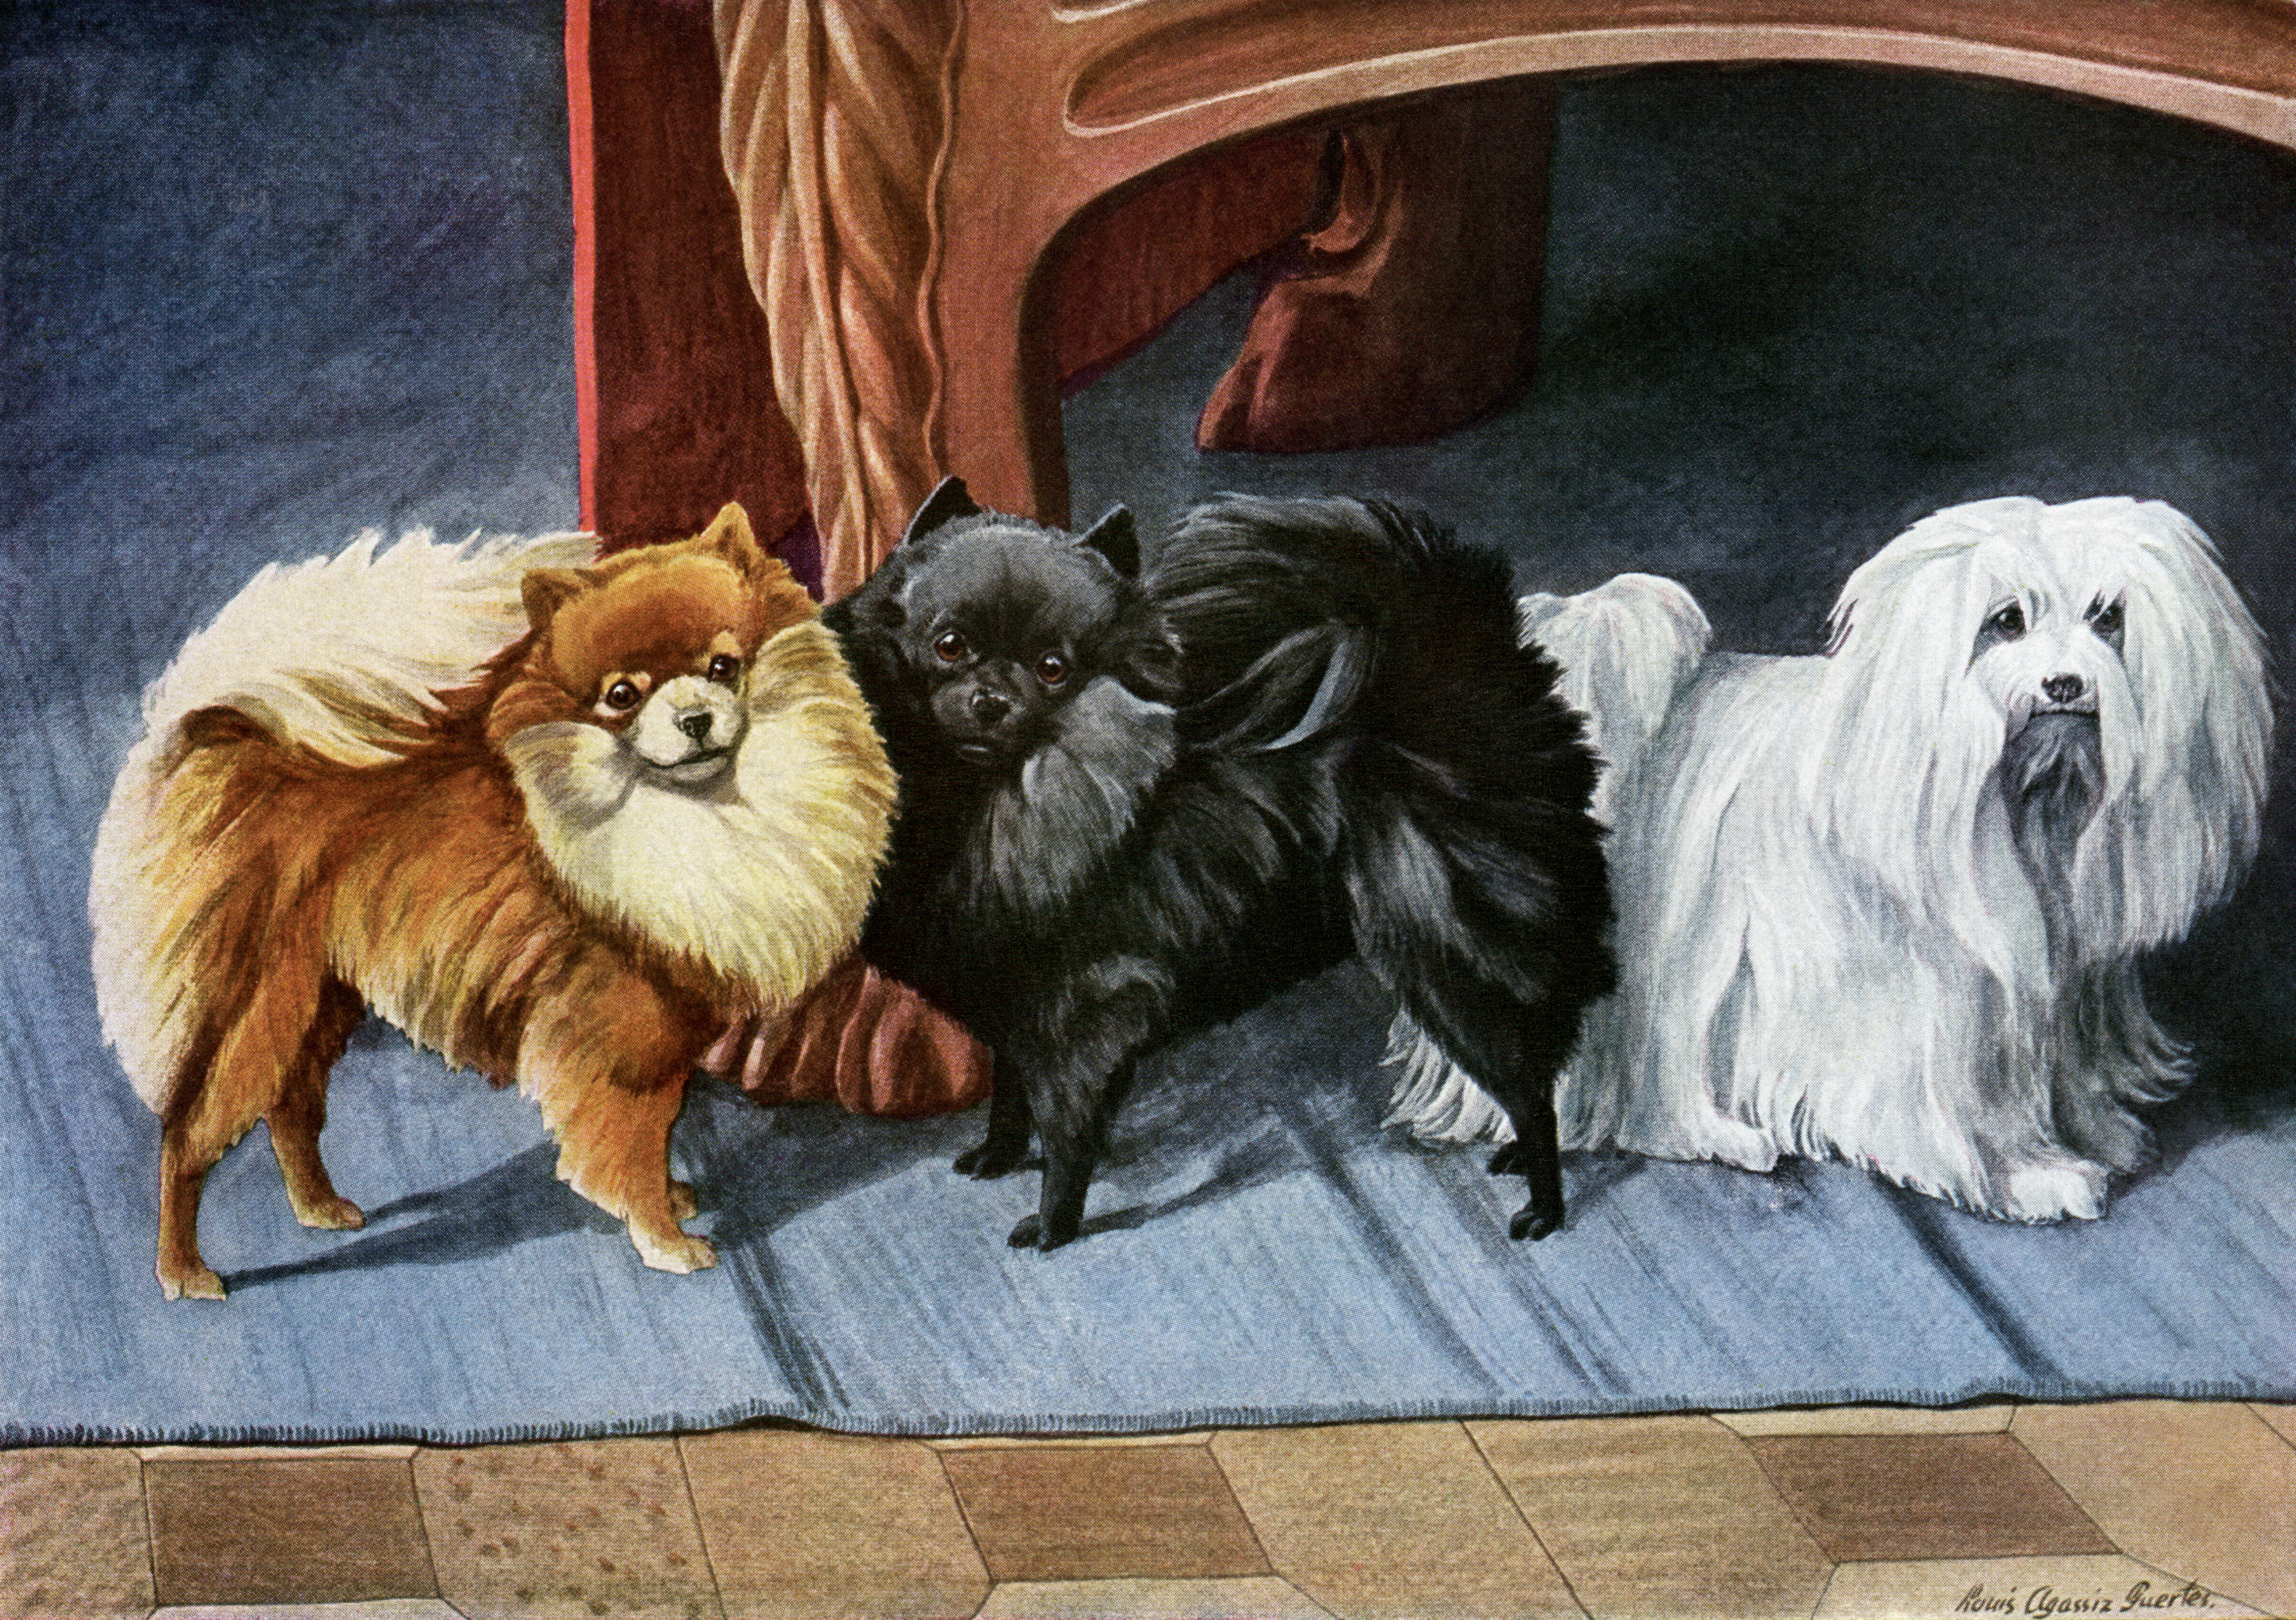 Louis Agassiz Fuertes, pomeranian vintage image free, maltese terrier illustration, vintage dog printable, small dog book plate